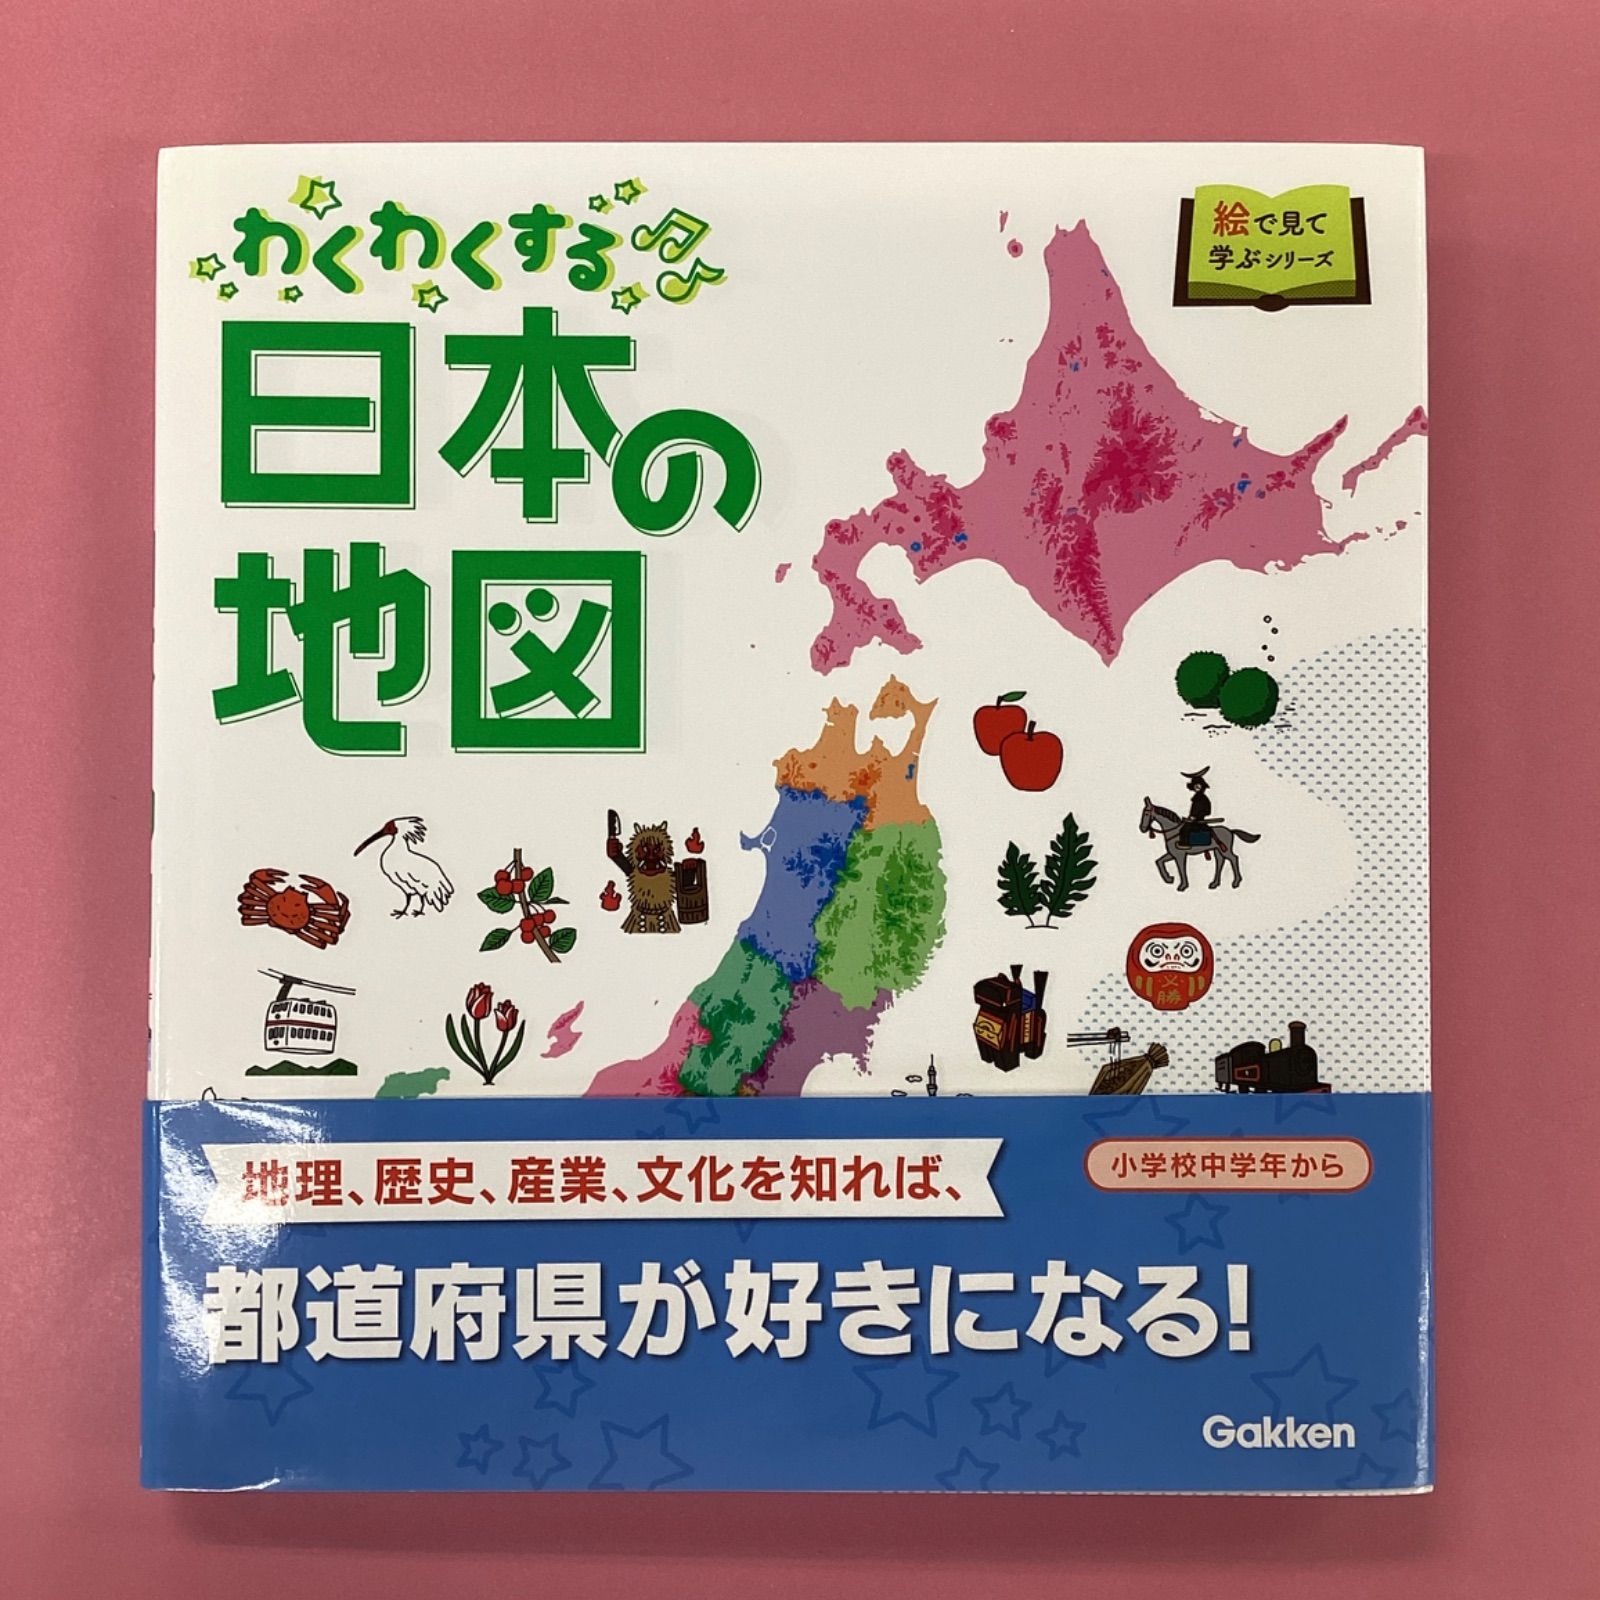 わくわくする日本の地図 絵で見て学ぶシリーズ ym_c8_3145 - メルカリ